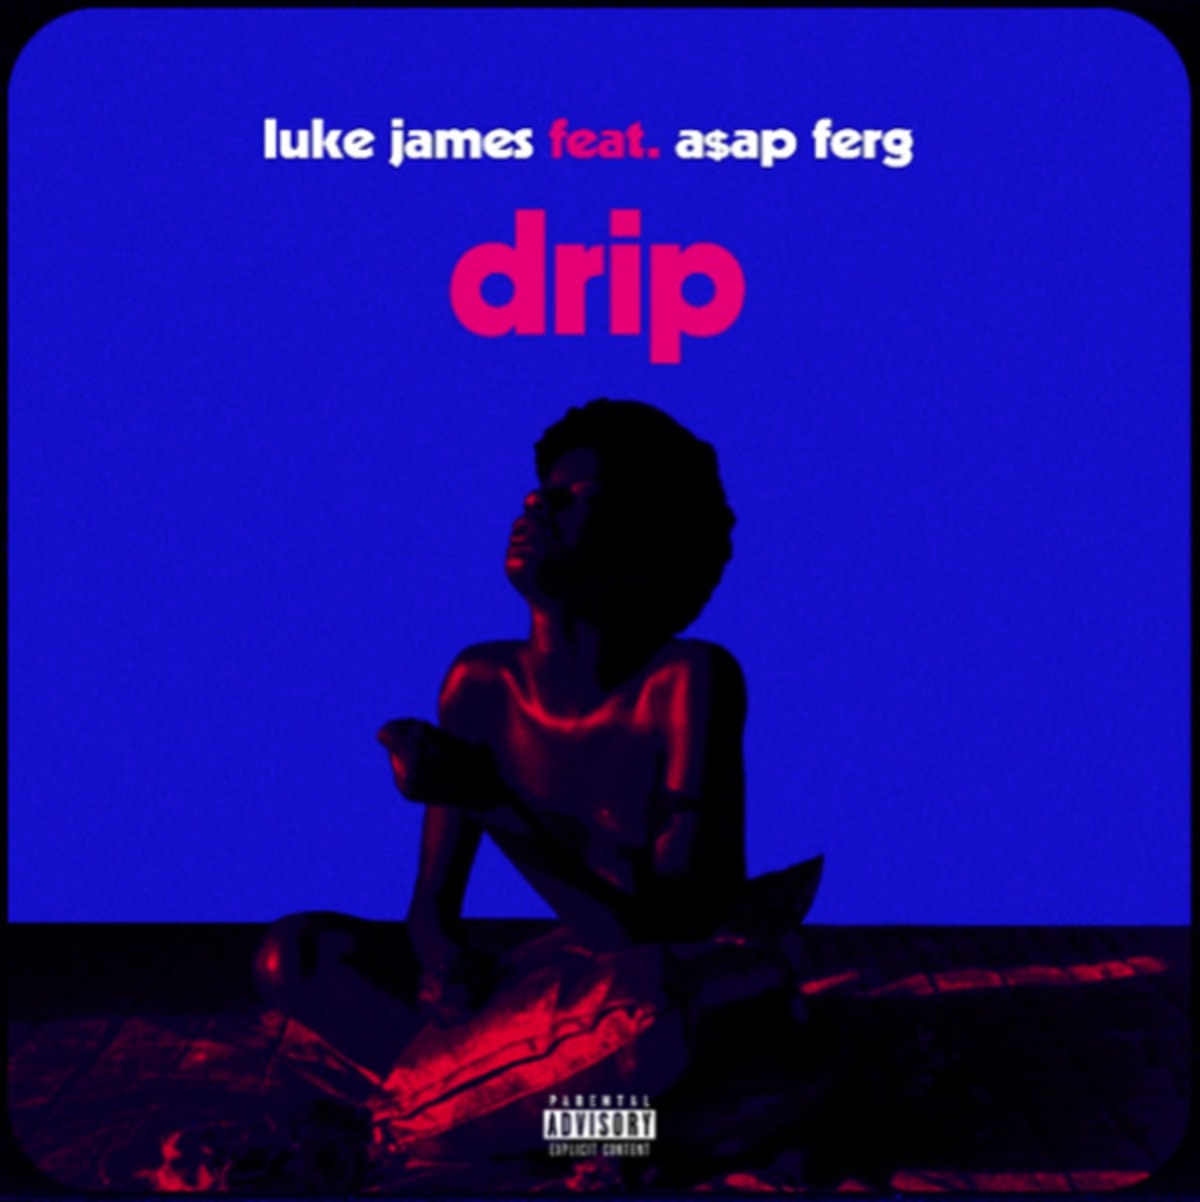 New Music: Luke James - Drip (featuring A$AP Ferg) (Remix)